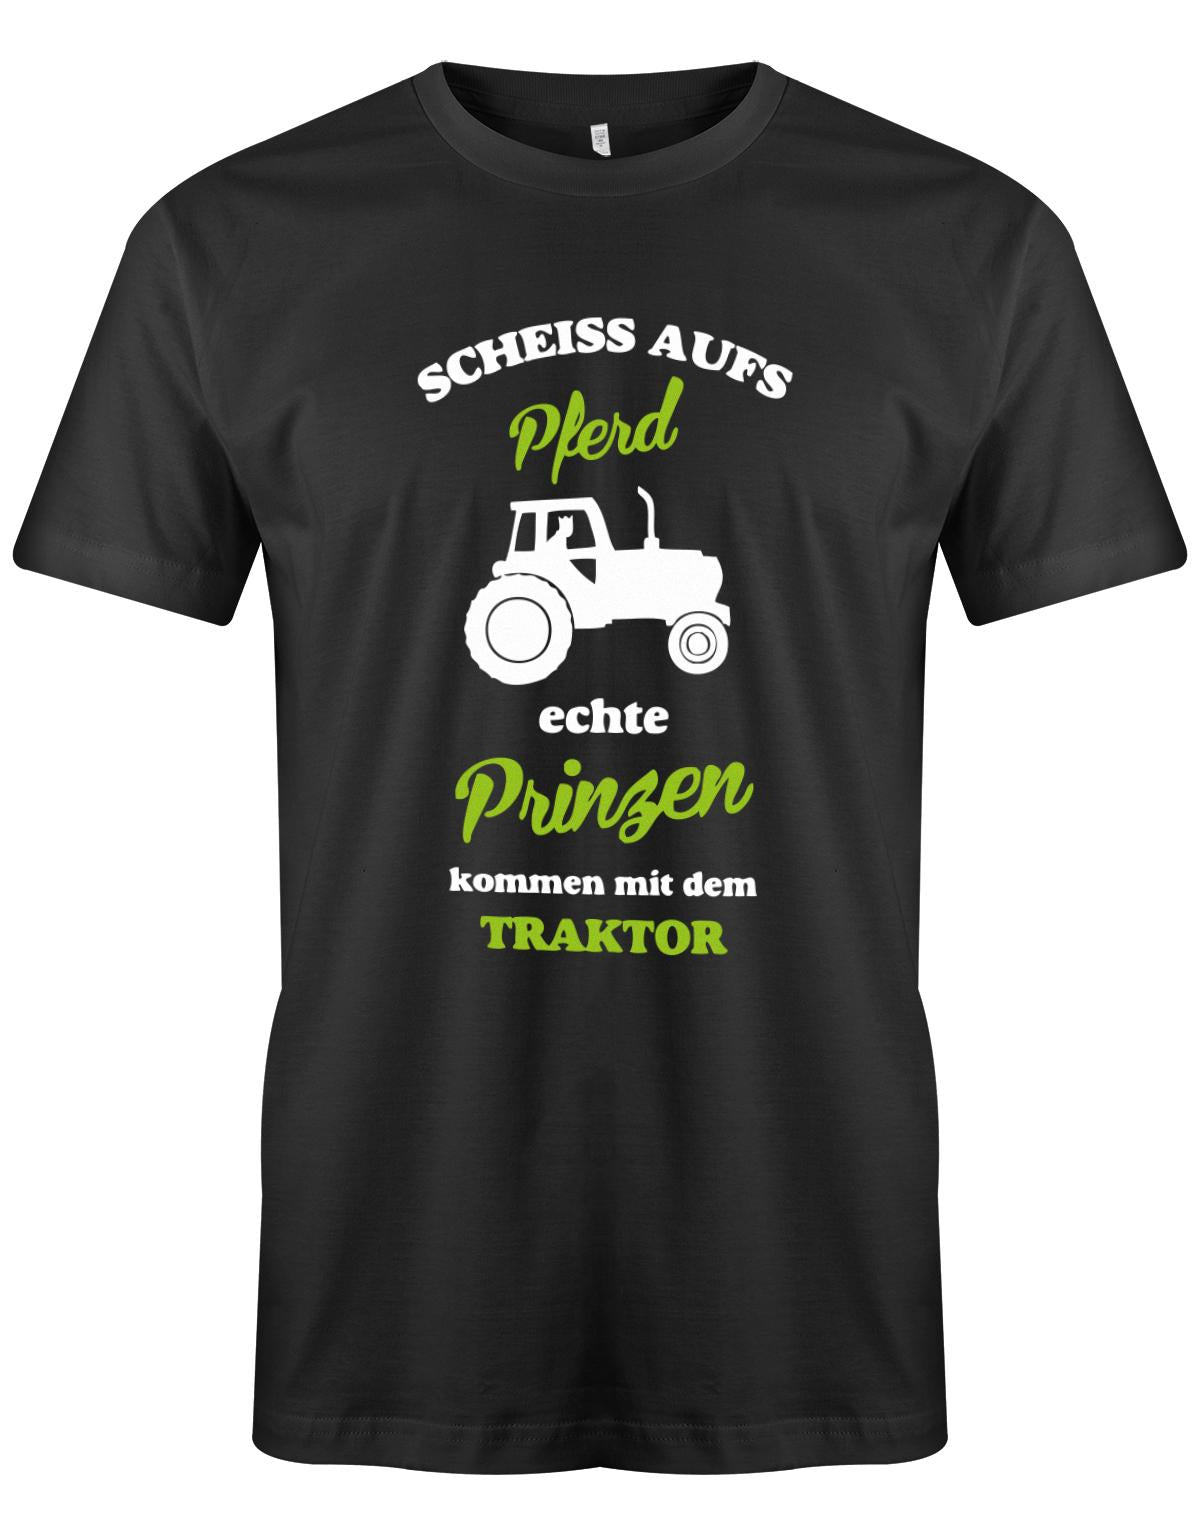 Landwirtschaft Shirt Männer - Scheiss aufs Pferd, echte Prinzen kommen mit dem Traktor.  SChwarz